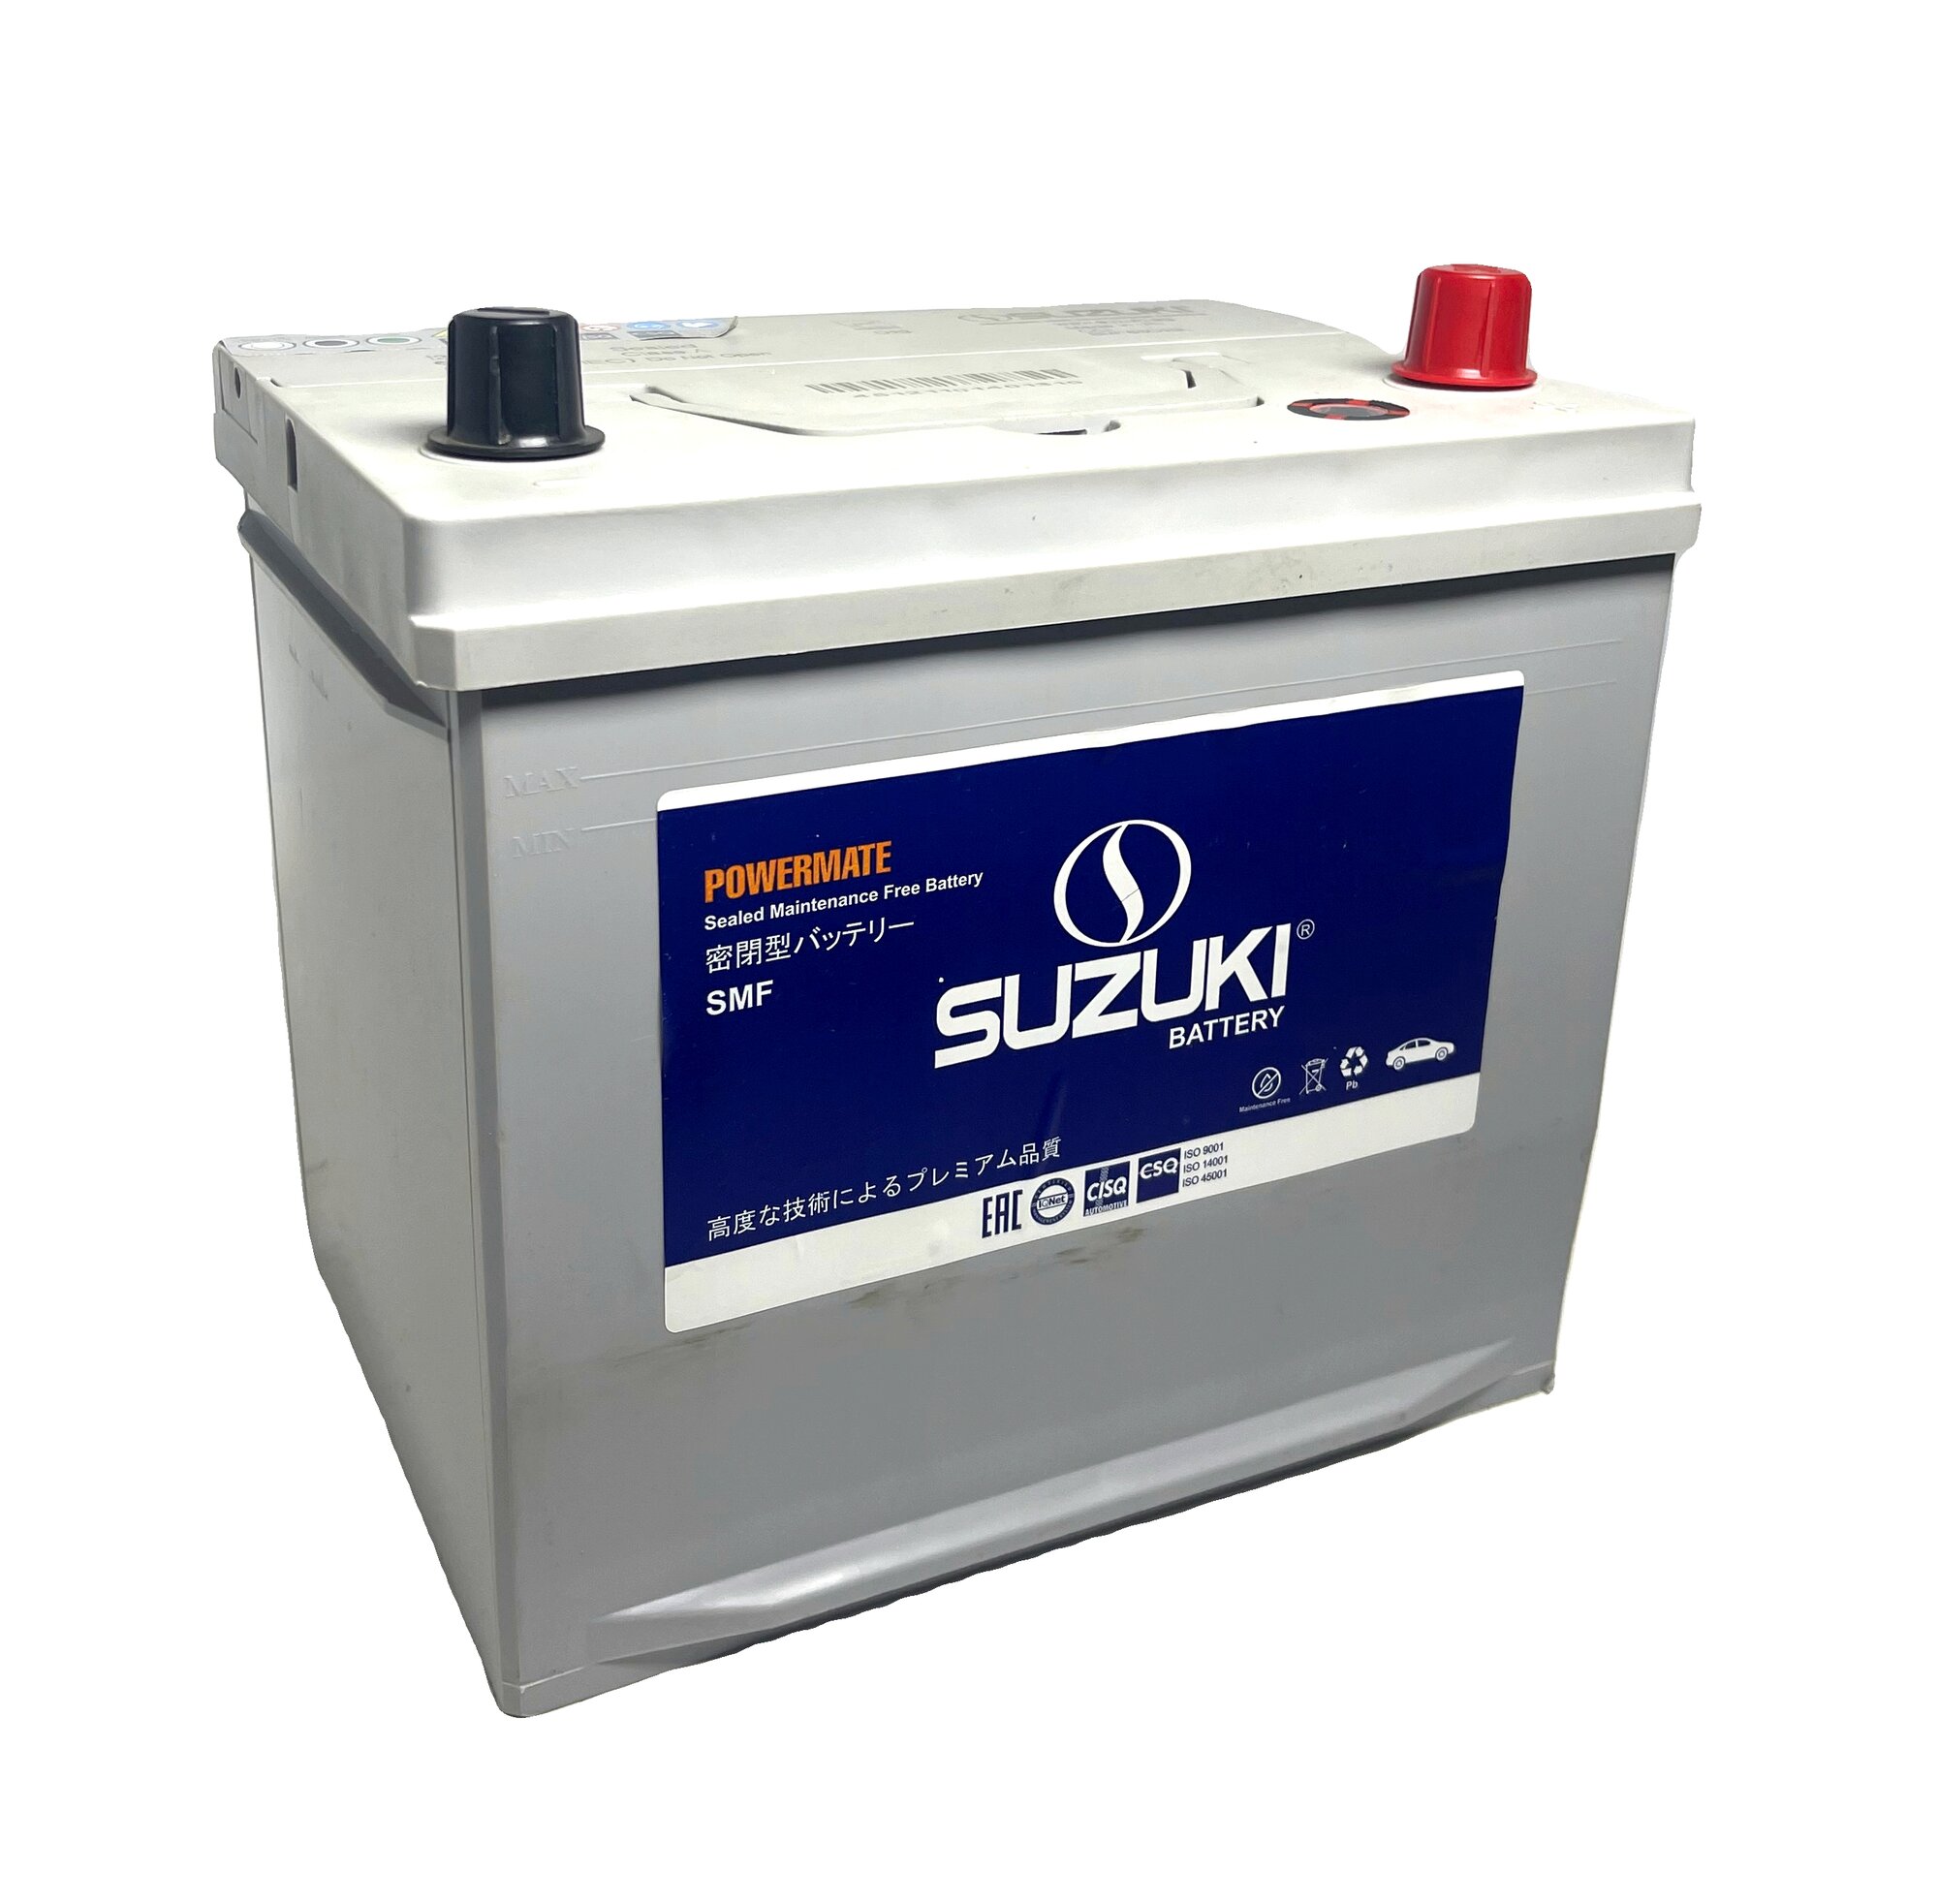 Автомобильный аккумулятор премиум класса SUZUKI 6СТ-60.0 (65D23L) бортик обратная полярность